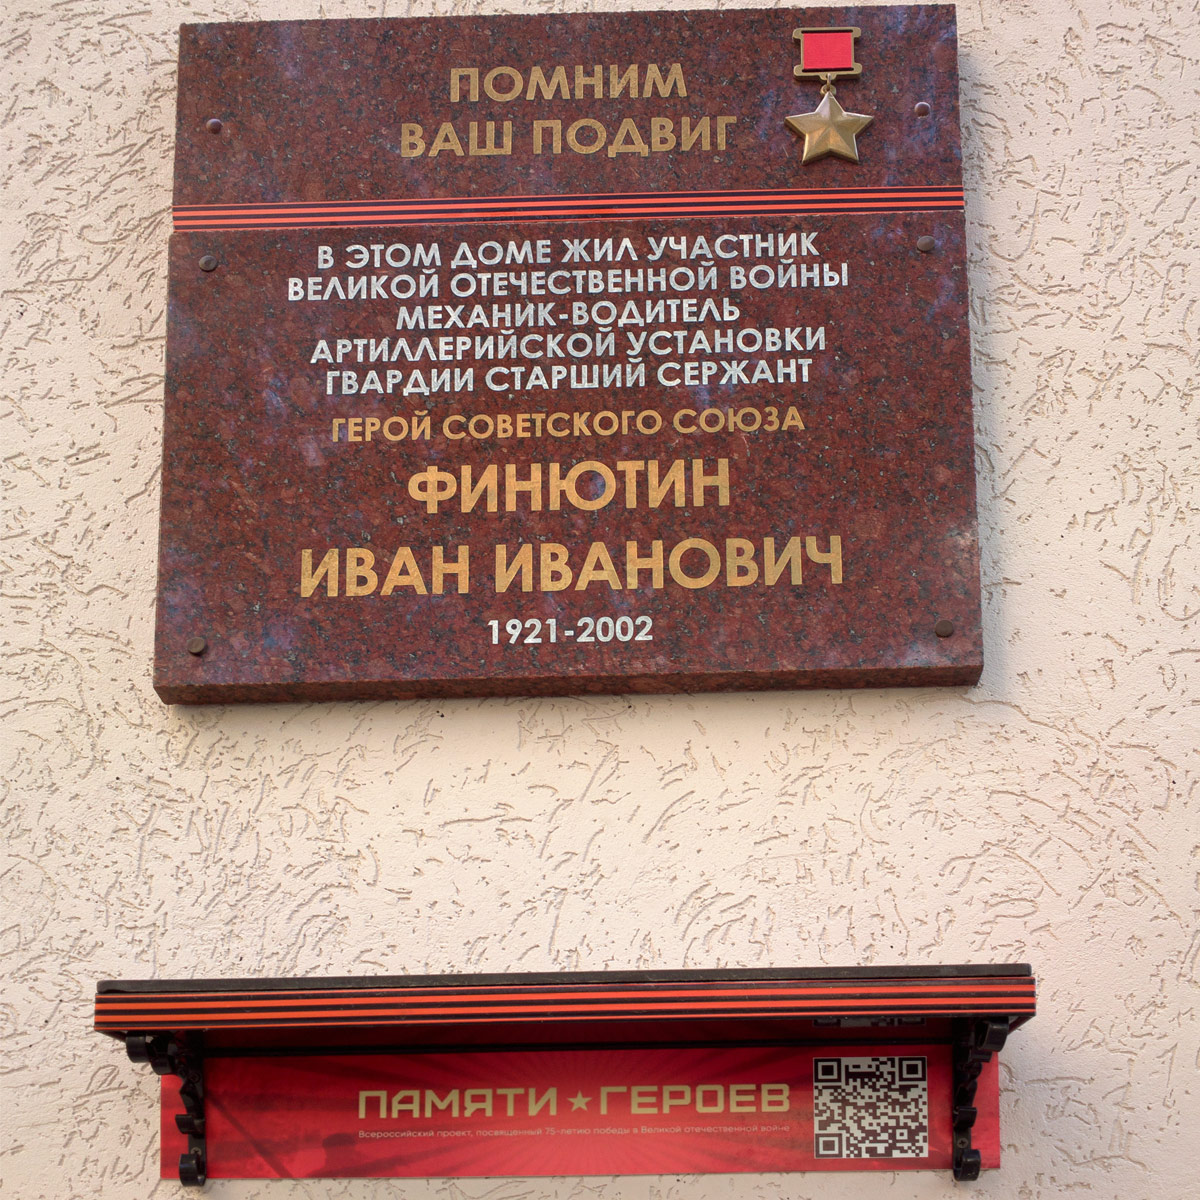 Samara, Проспект Ленина, 11. Samara — Memorial plaques